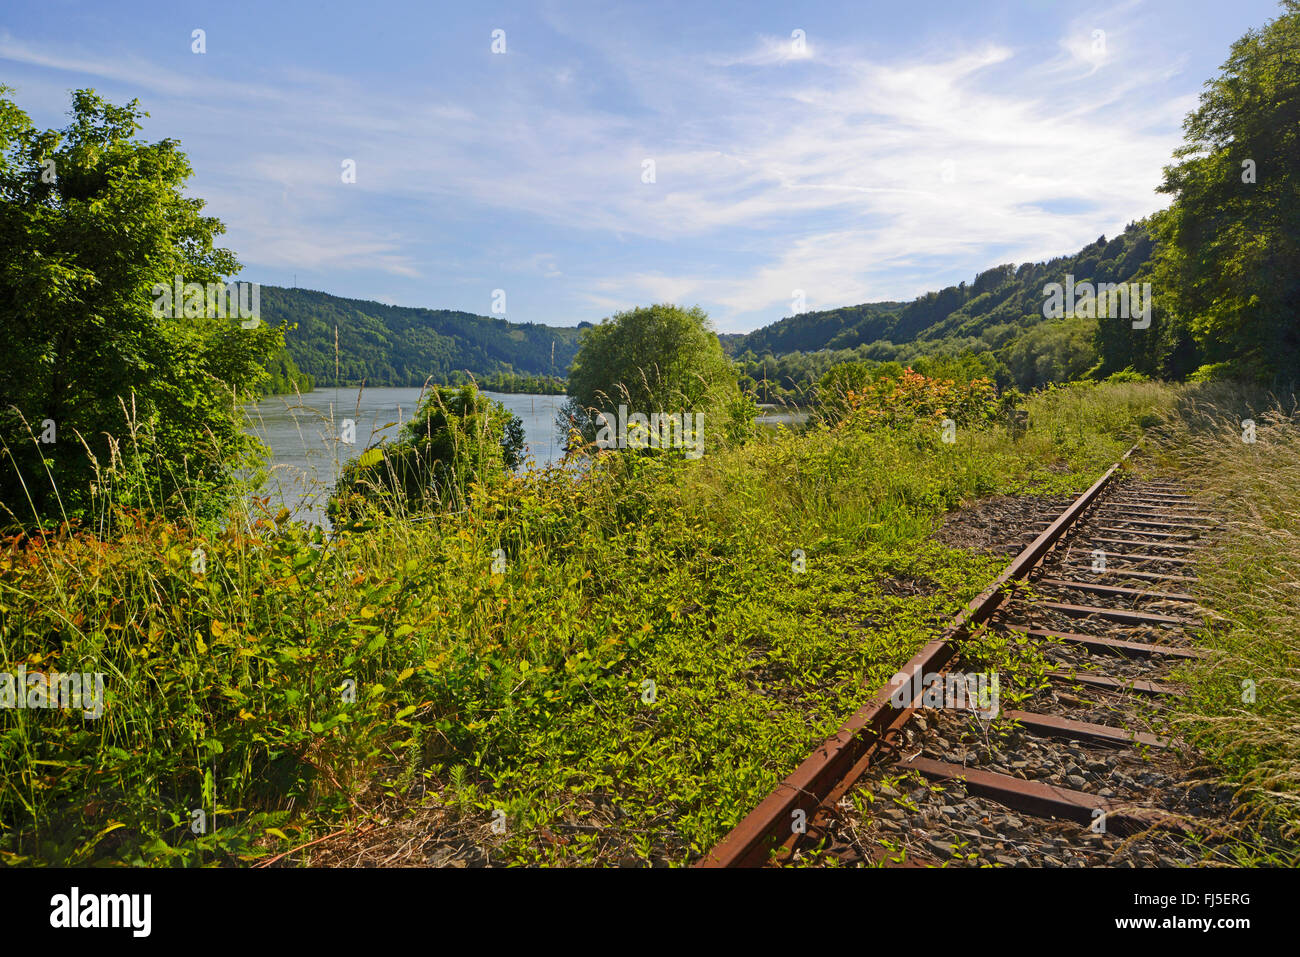 geschlossenen Bahnstrecke in der Nähe von Donau, Donauleiten, Nationalpark Bayerischer Wald, Bayern, Deutschland Stockfoto